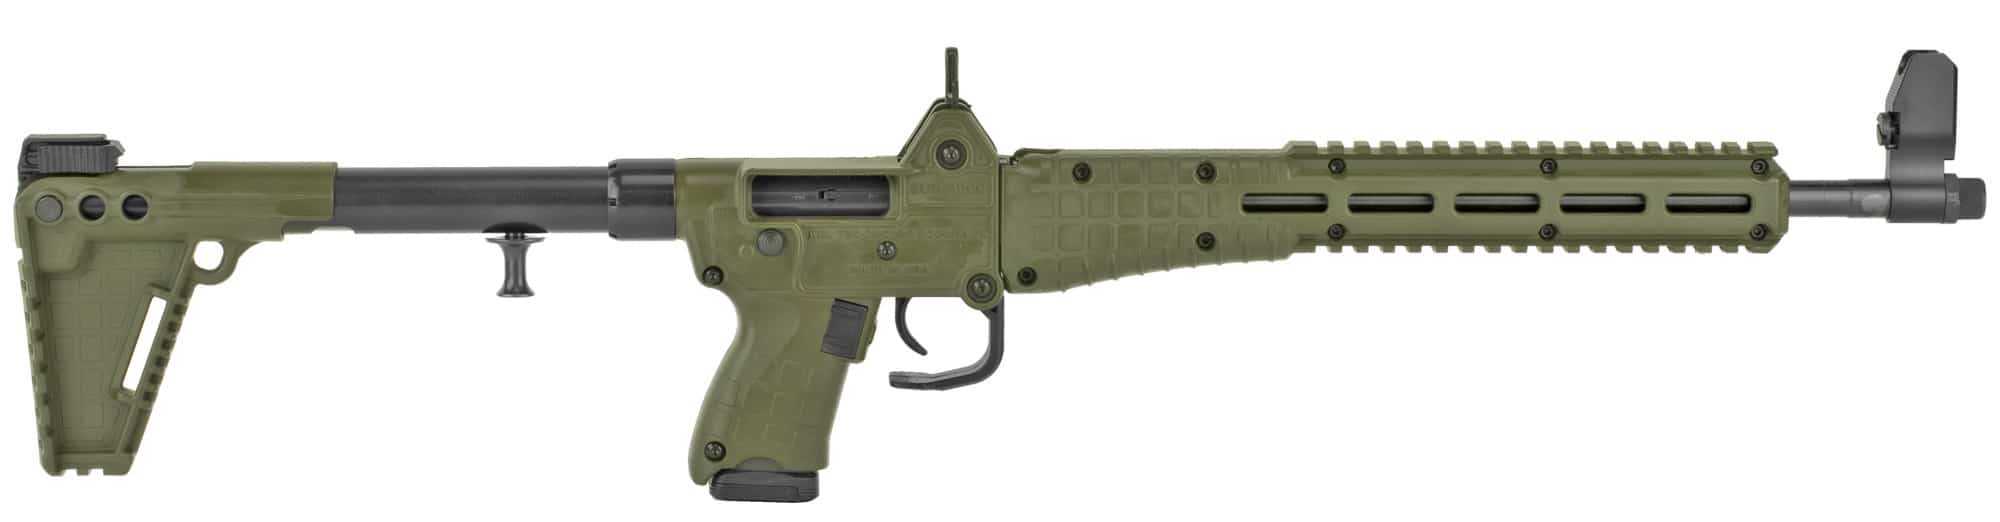 Kel-Tec SUB 2000 Gen2 Green 9mm Rifle, Glock 19 Magazines, 16.1" - SUB2K9GLK19BGRNHC - Nagel's Gun Shop | San Antonio, Texas